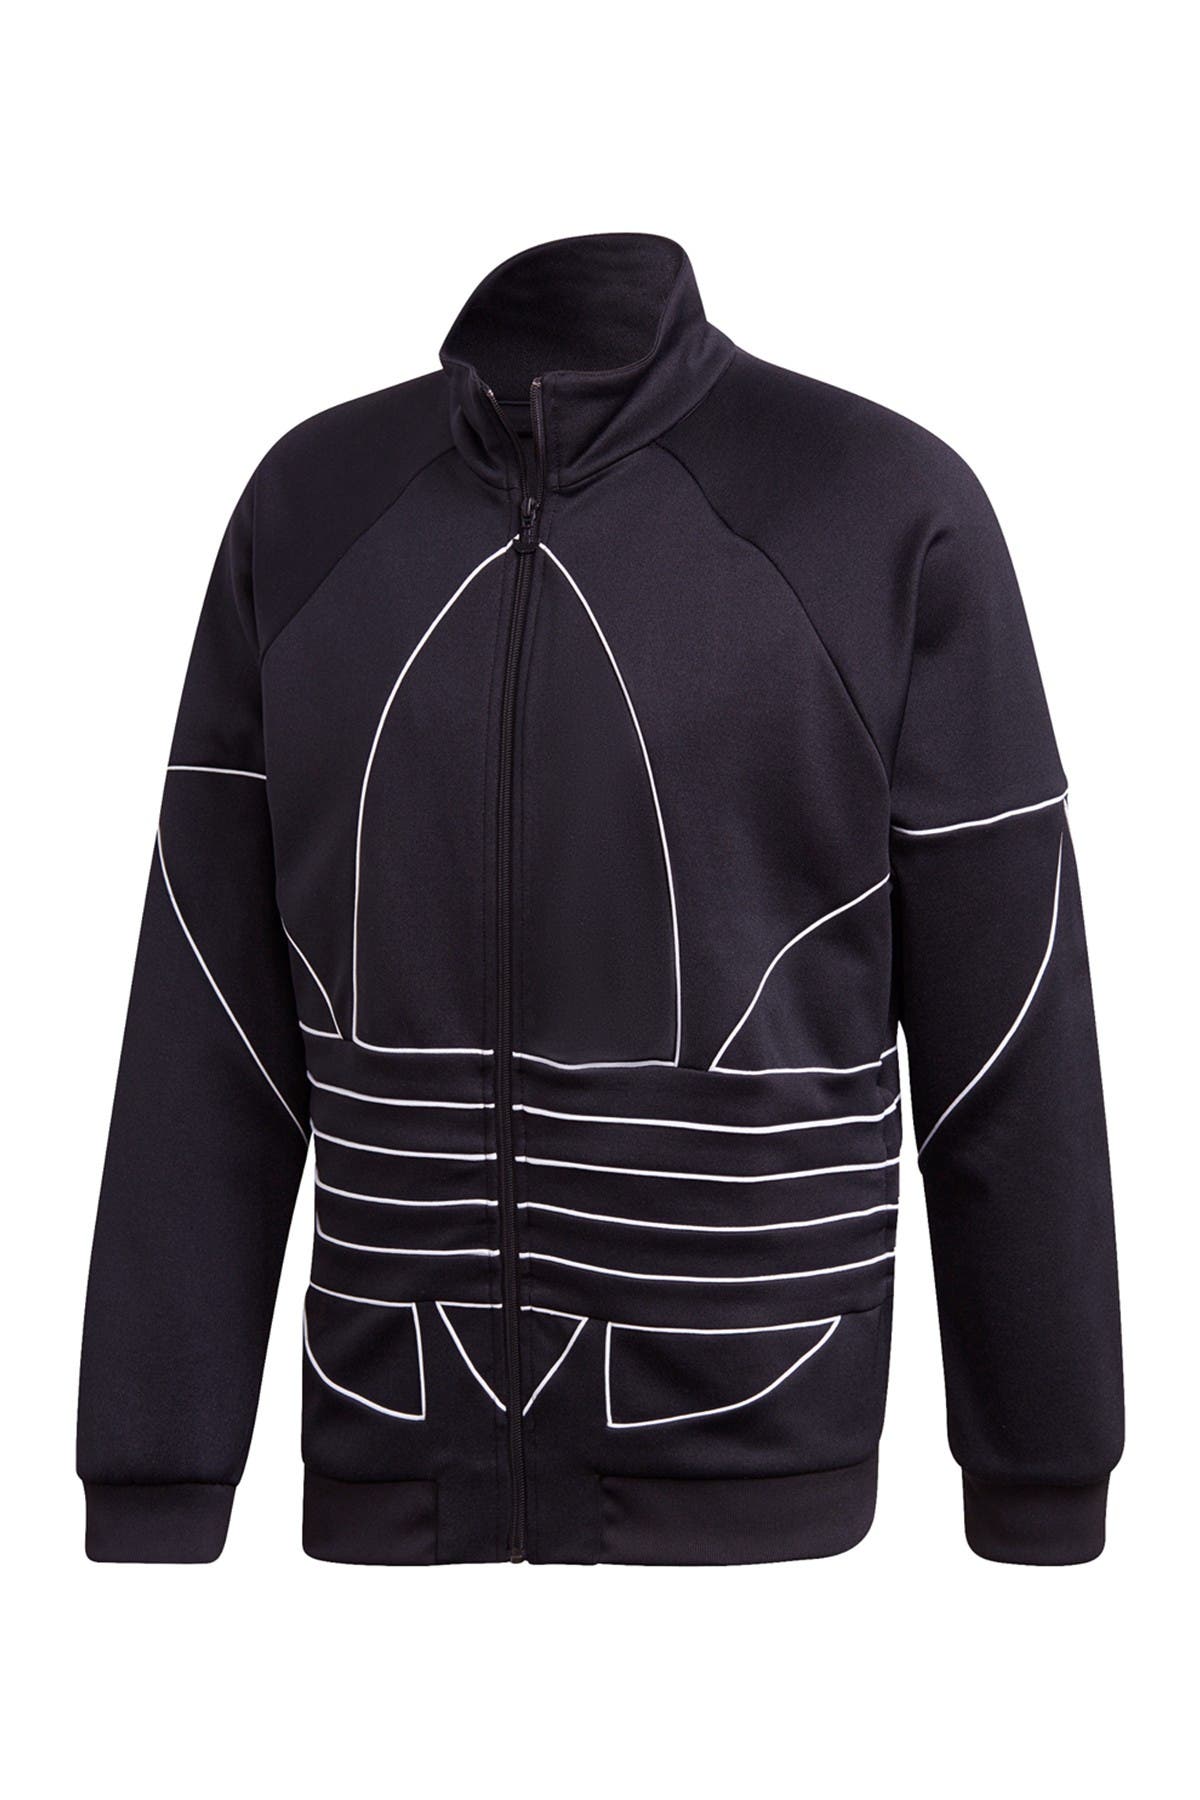 adidas trefoil outline jacket